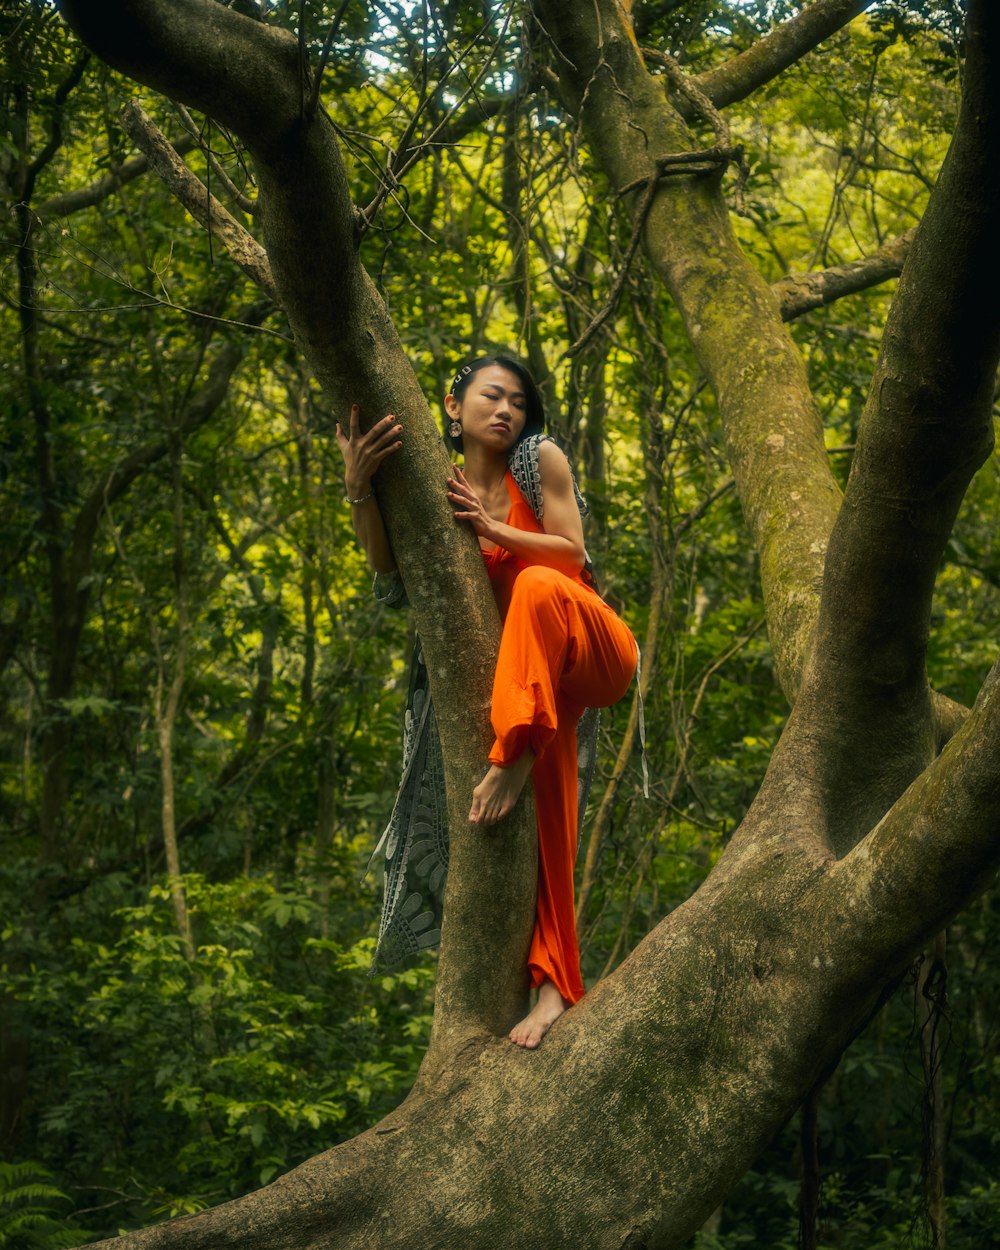 Eine Frau in einem orangefarbenen Kleid klettert auf einen Baum